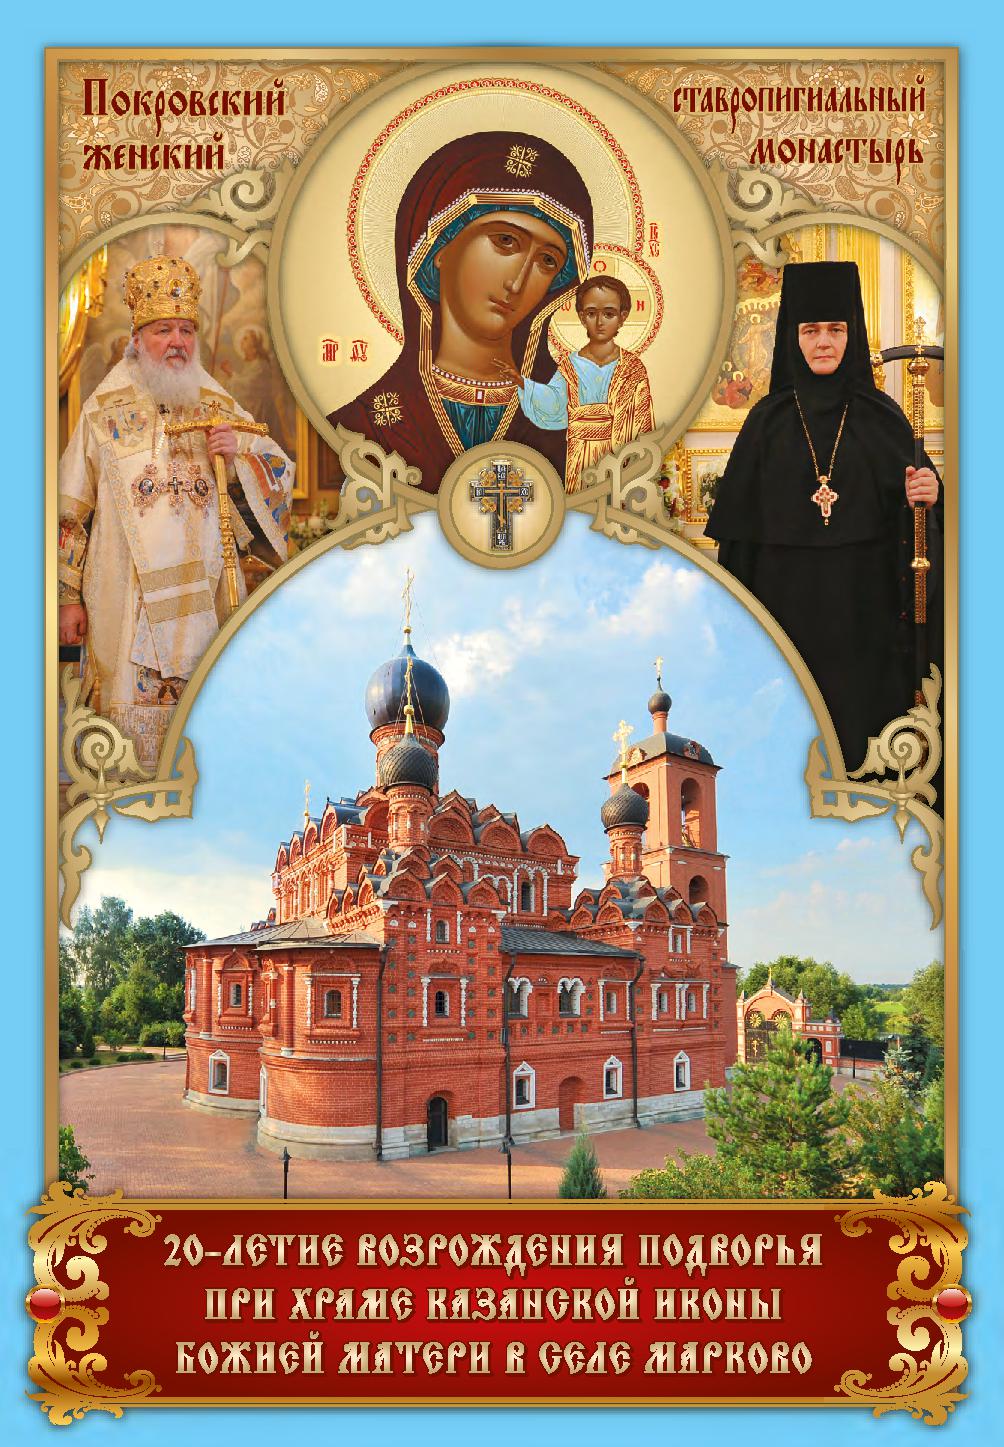 20 - летие возрождения подворья при храме Казанской иконы Божией Матери в селе Марково